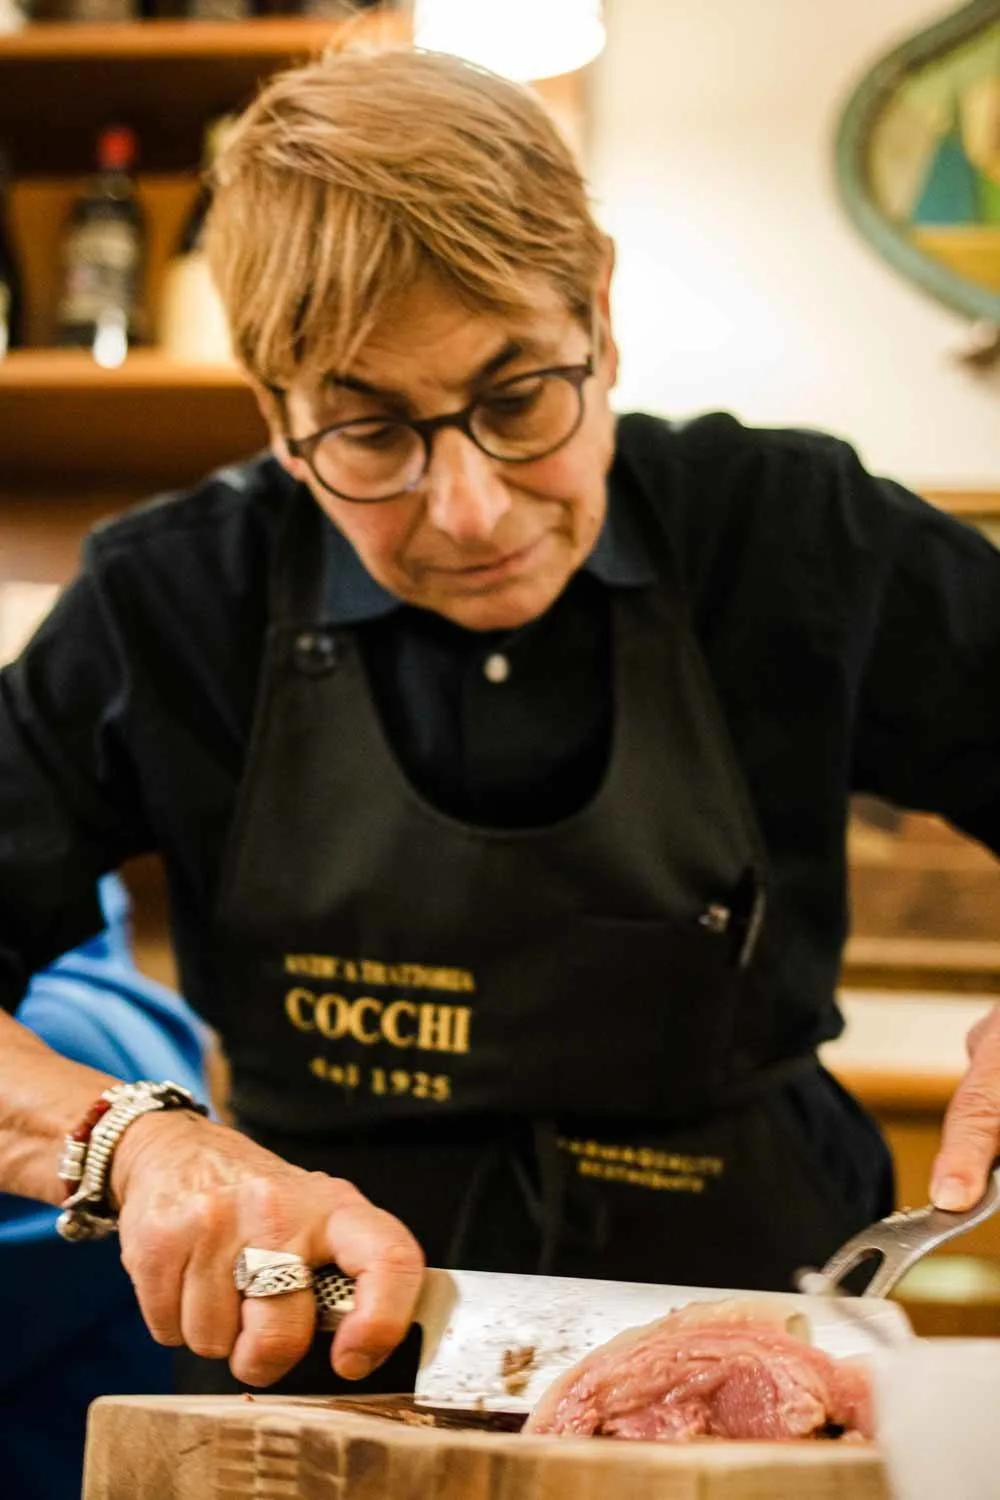 Female Chef at Ristorante Cocchi in Parma